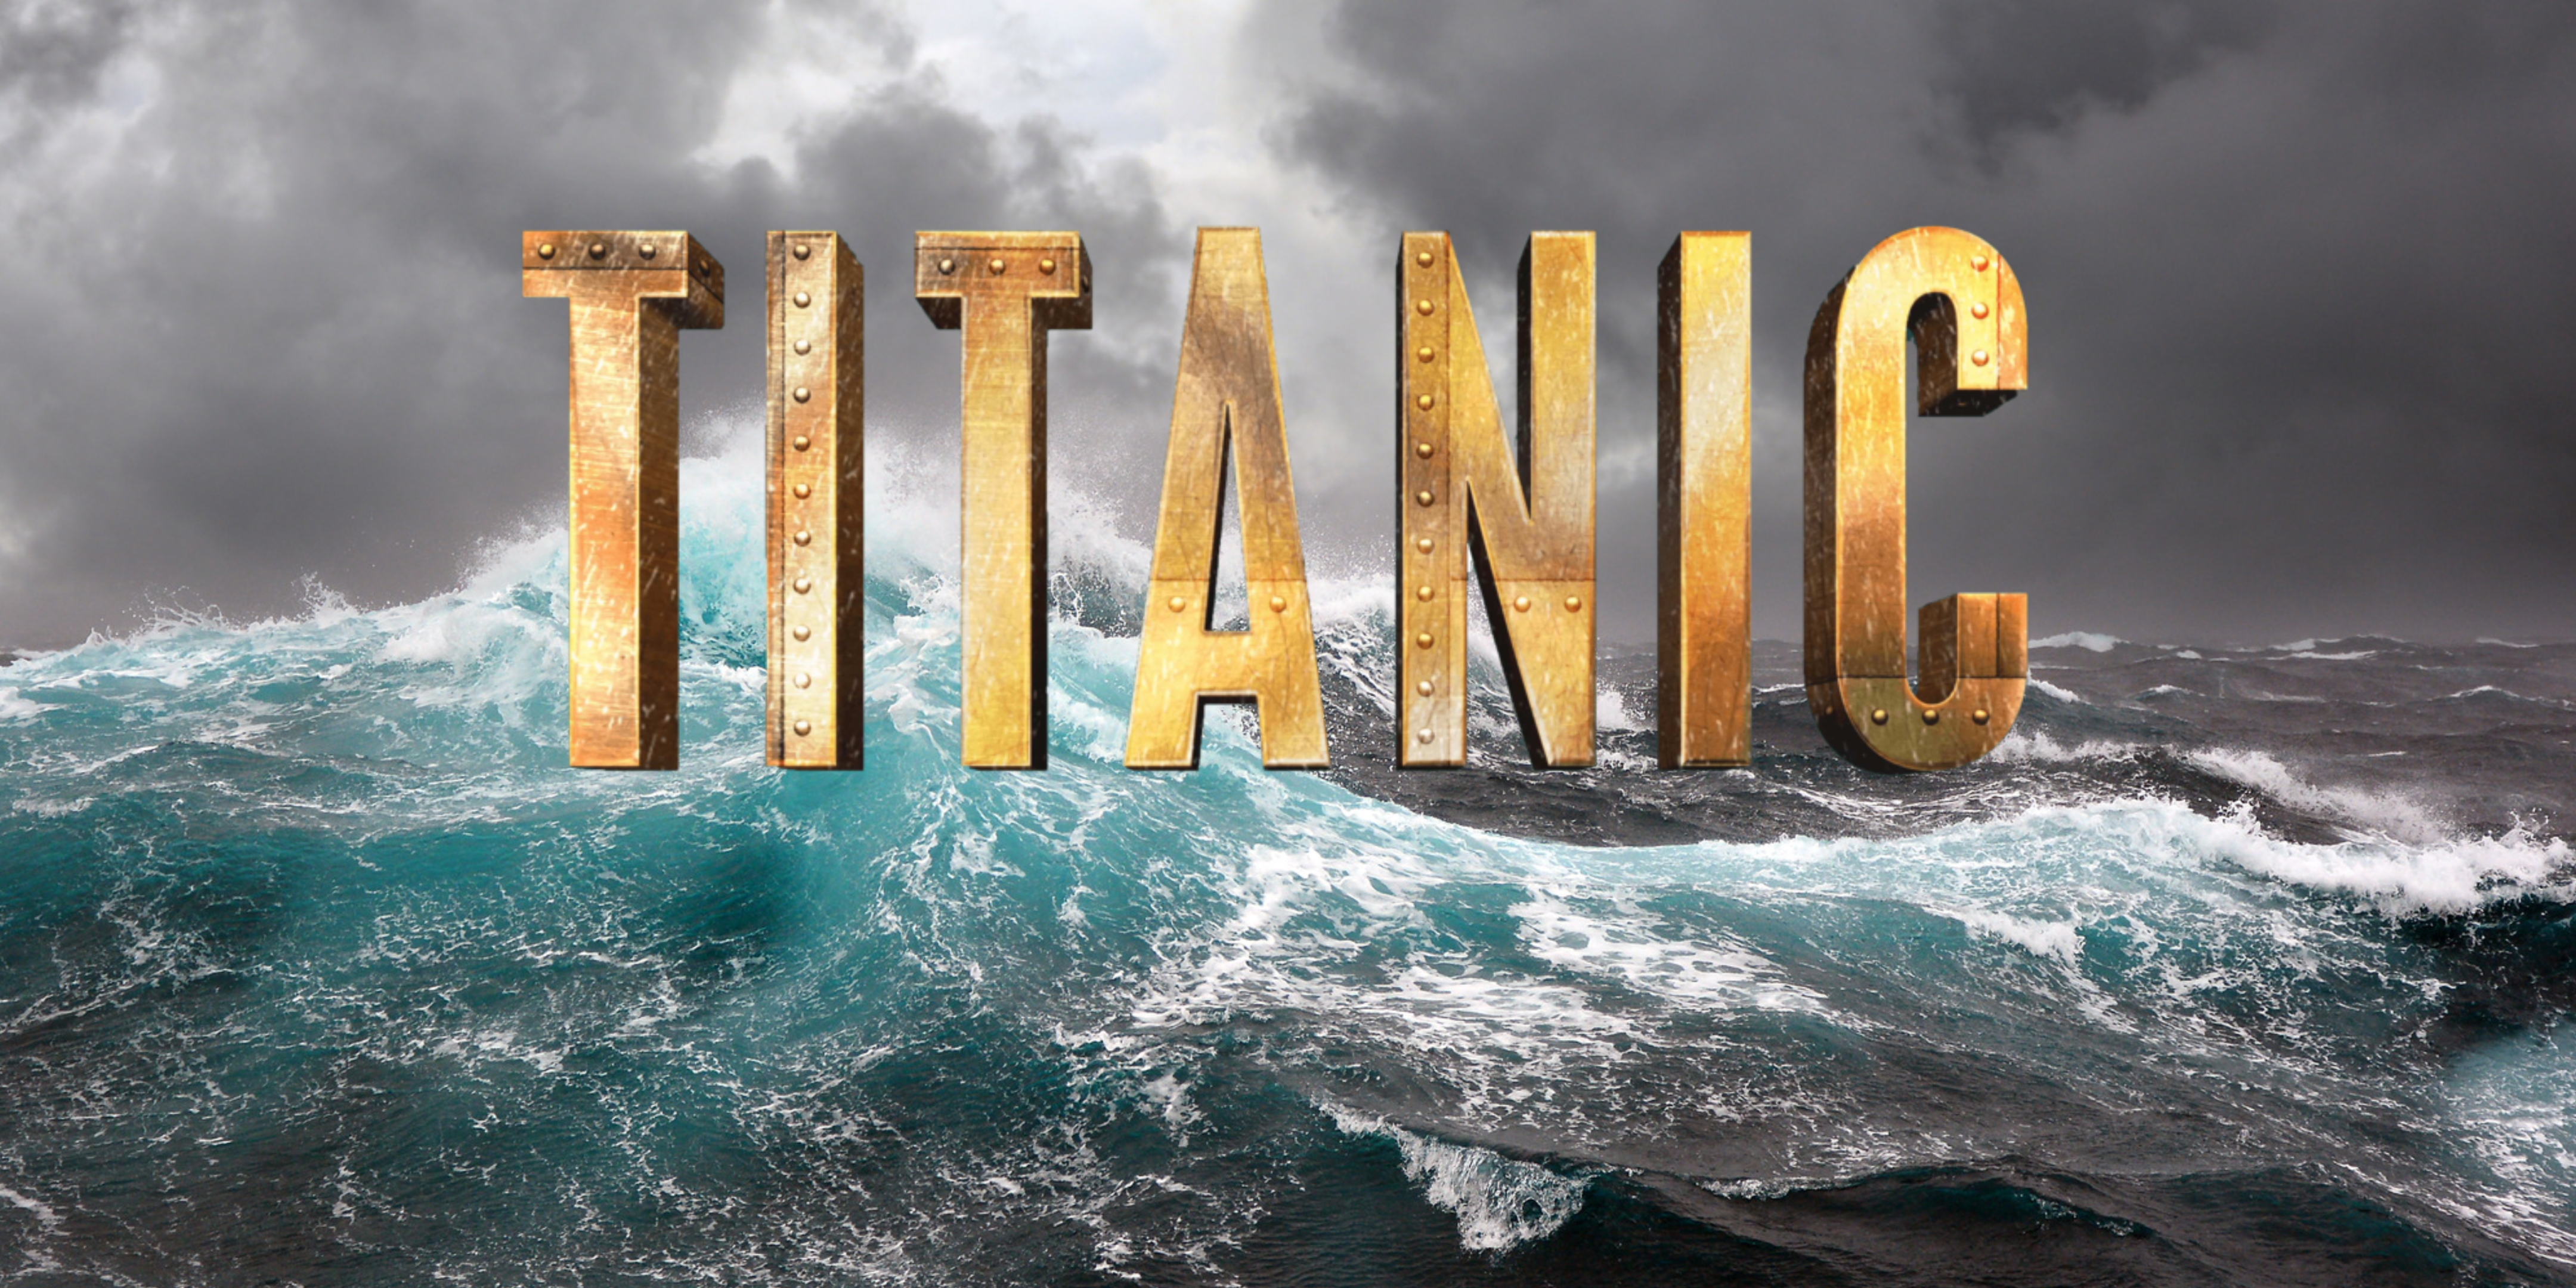 9 en 10 juni speelt OVA Titanic - de Musical in de Grote zaal van de Shouwburg Amstelveen.